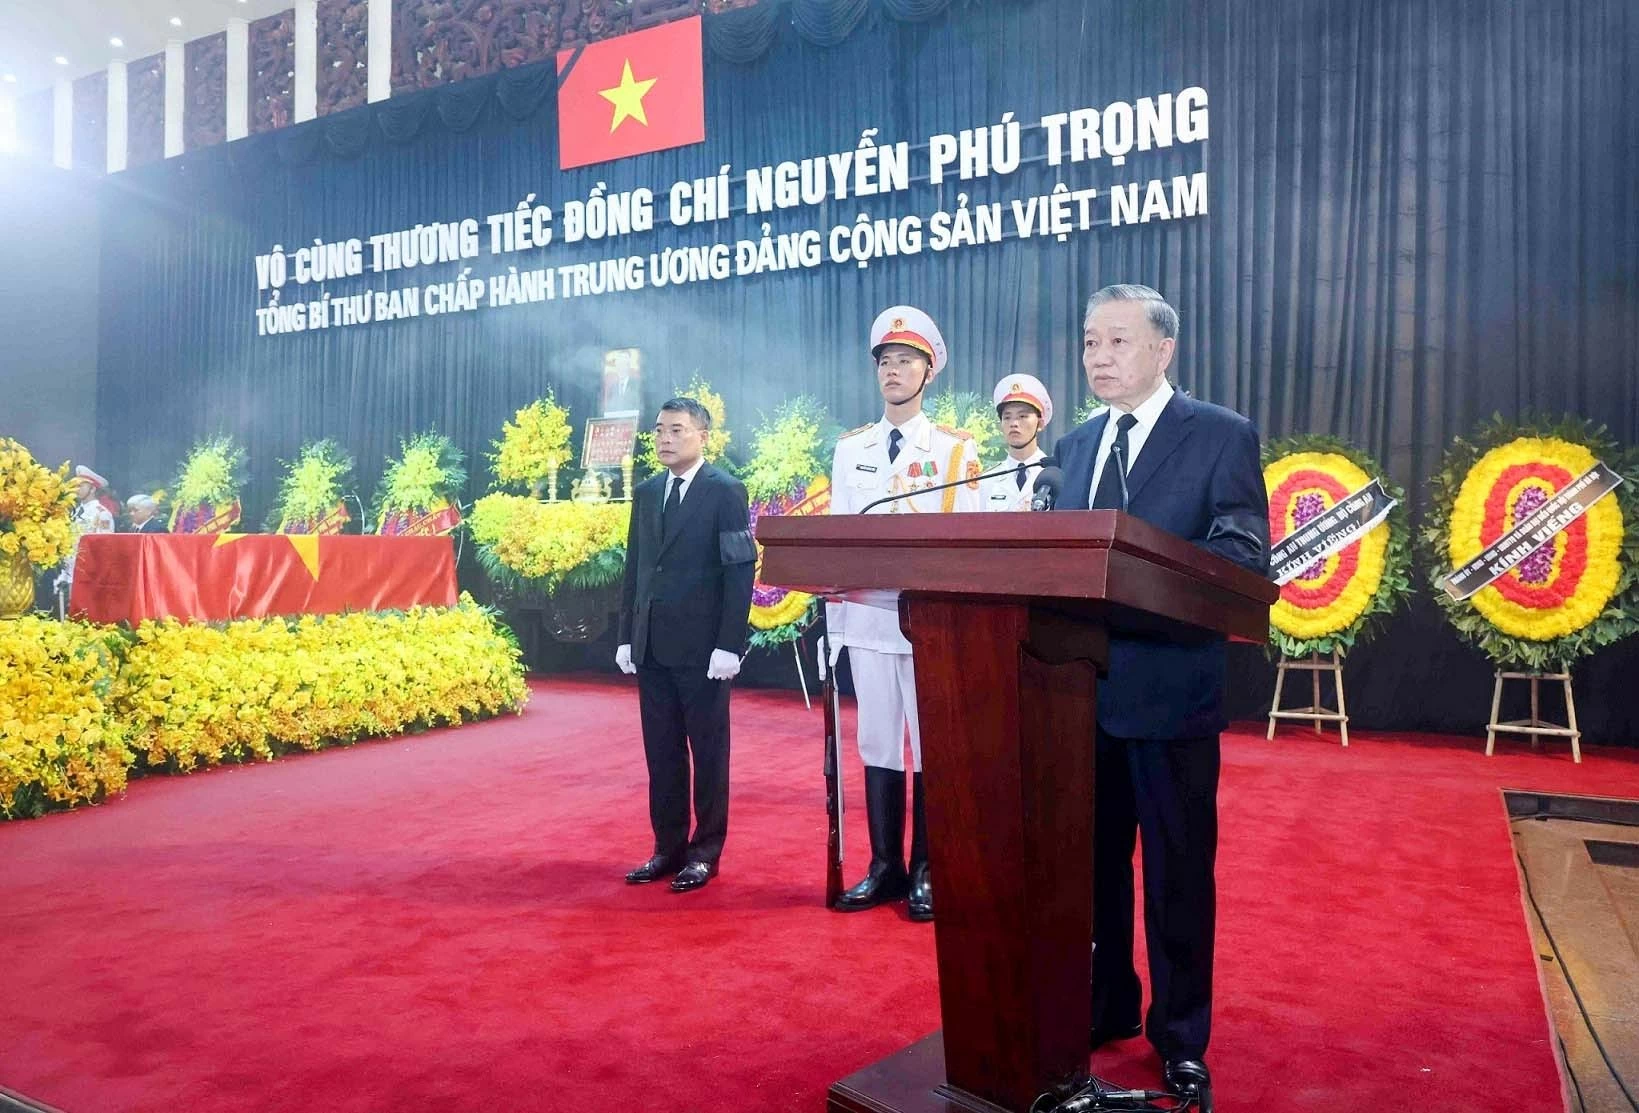 Trọn cuộc đời Tổng Bí thư Nguyễn Phú Trọng đã bền bỉ cống hiến cho Đảng và dân tộc